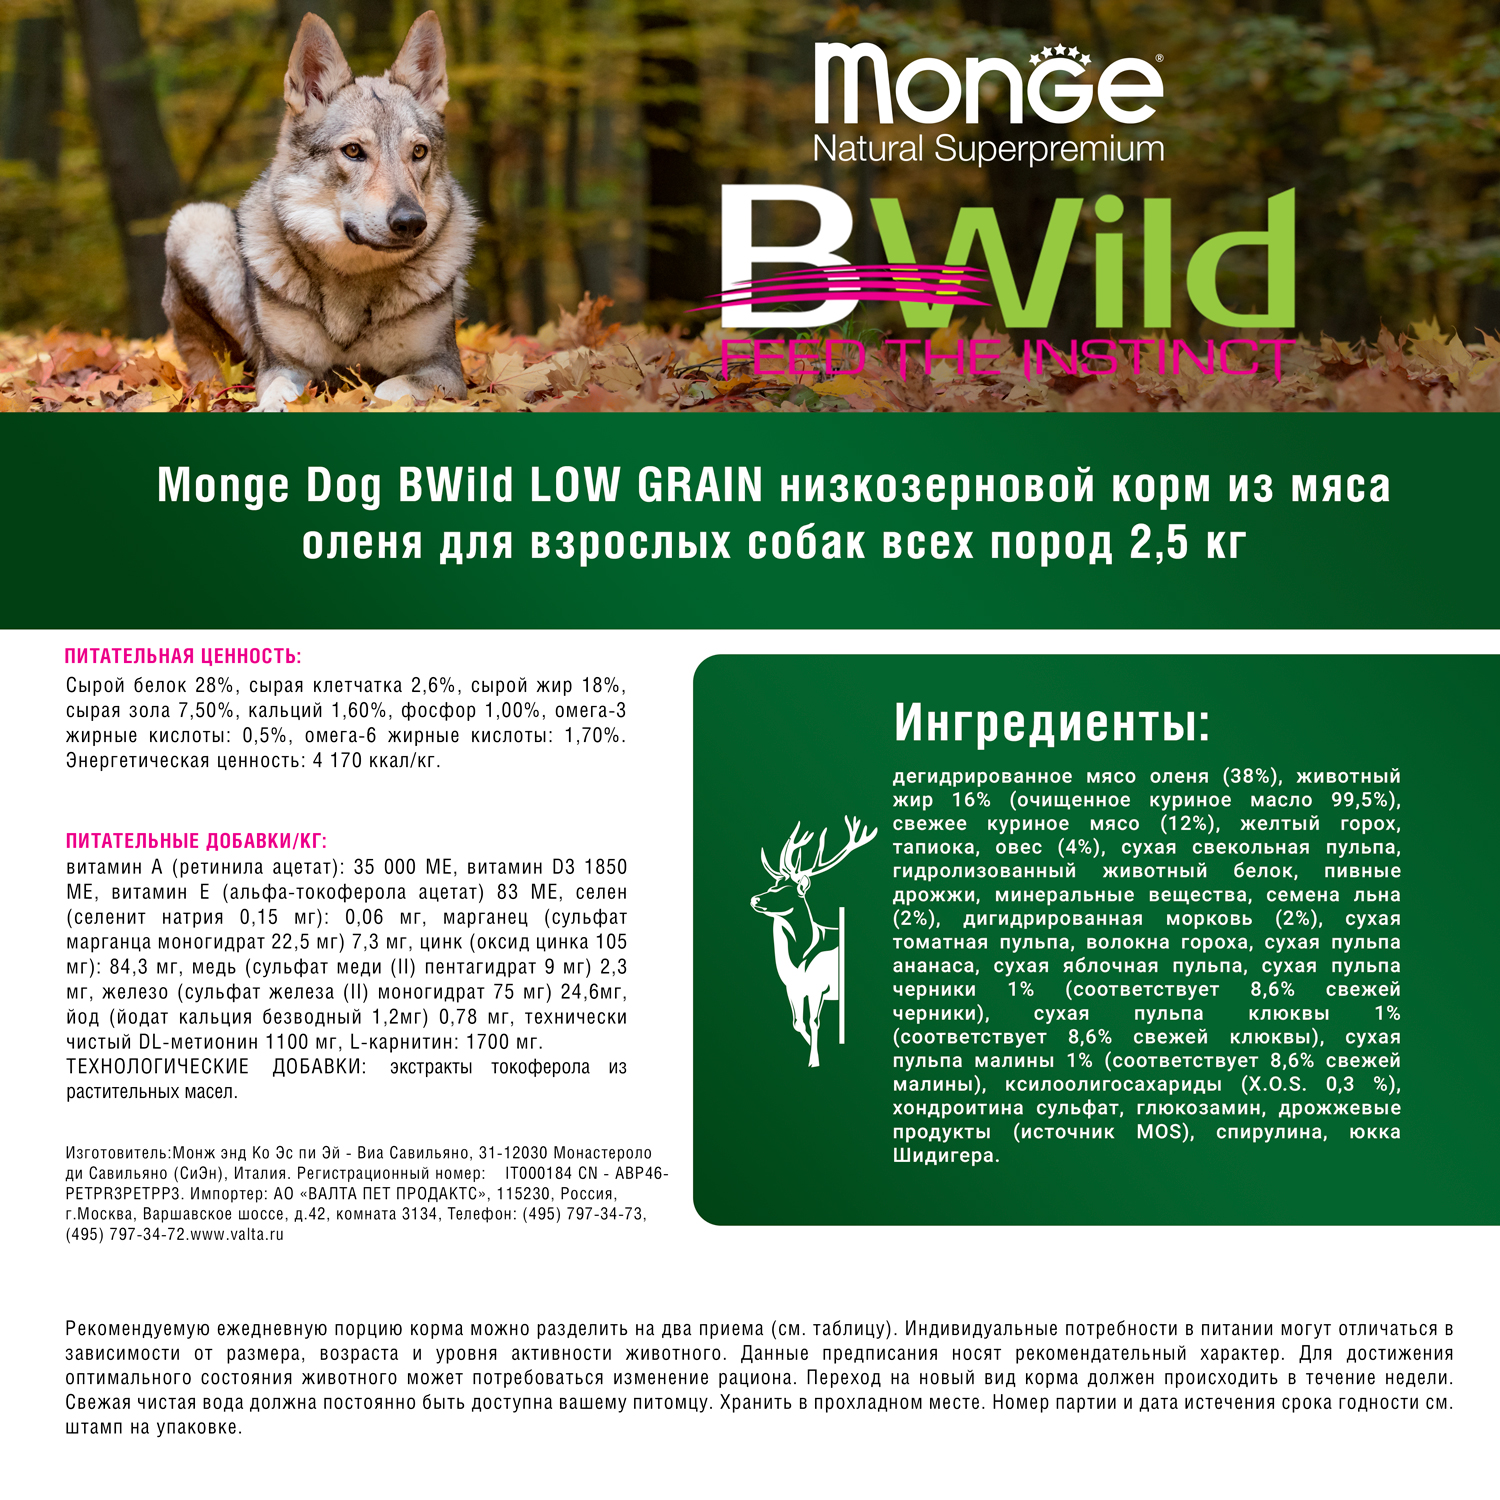 Сухой корм Monge Dog BWild LOW GRAIN для взрослых собак, низкозерновой, из мяса оленя 2,5 кг